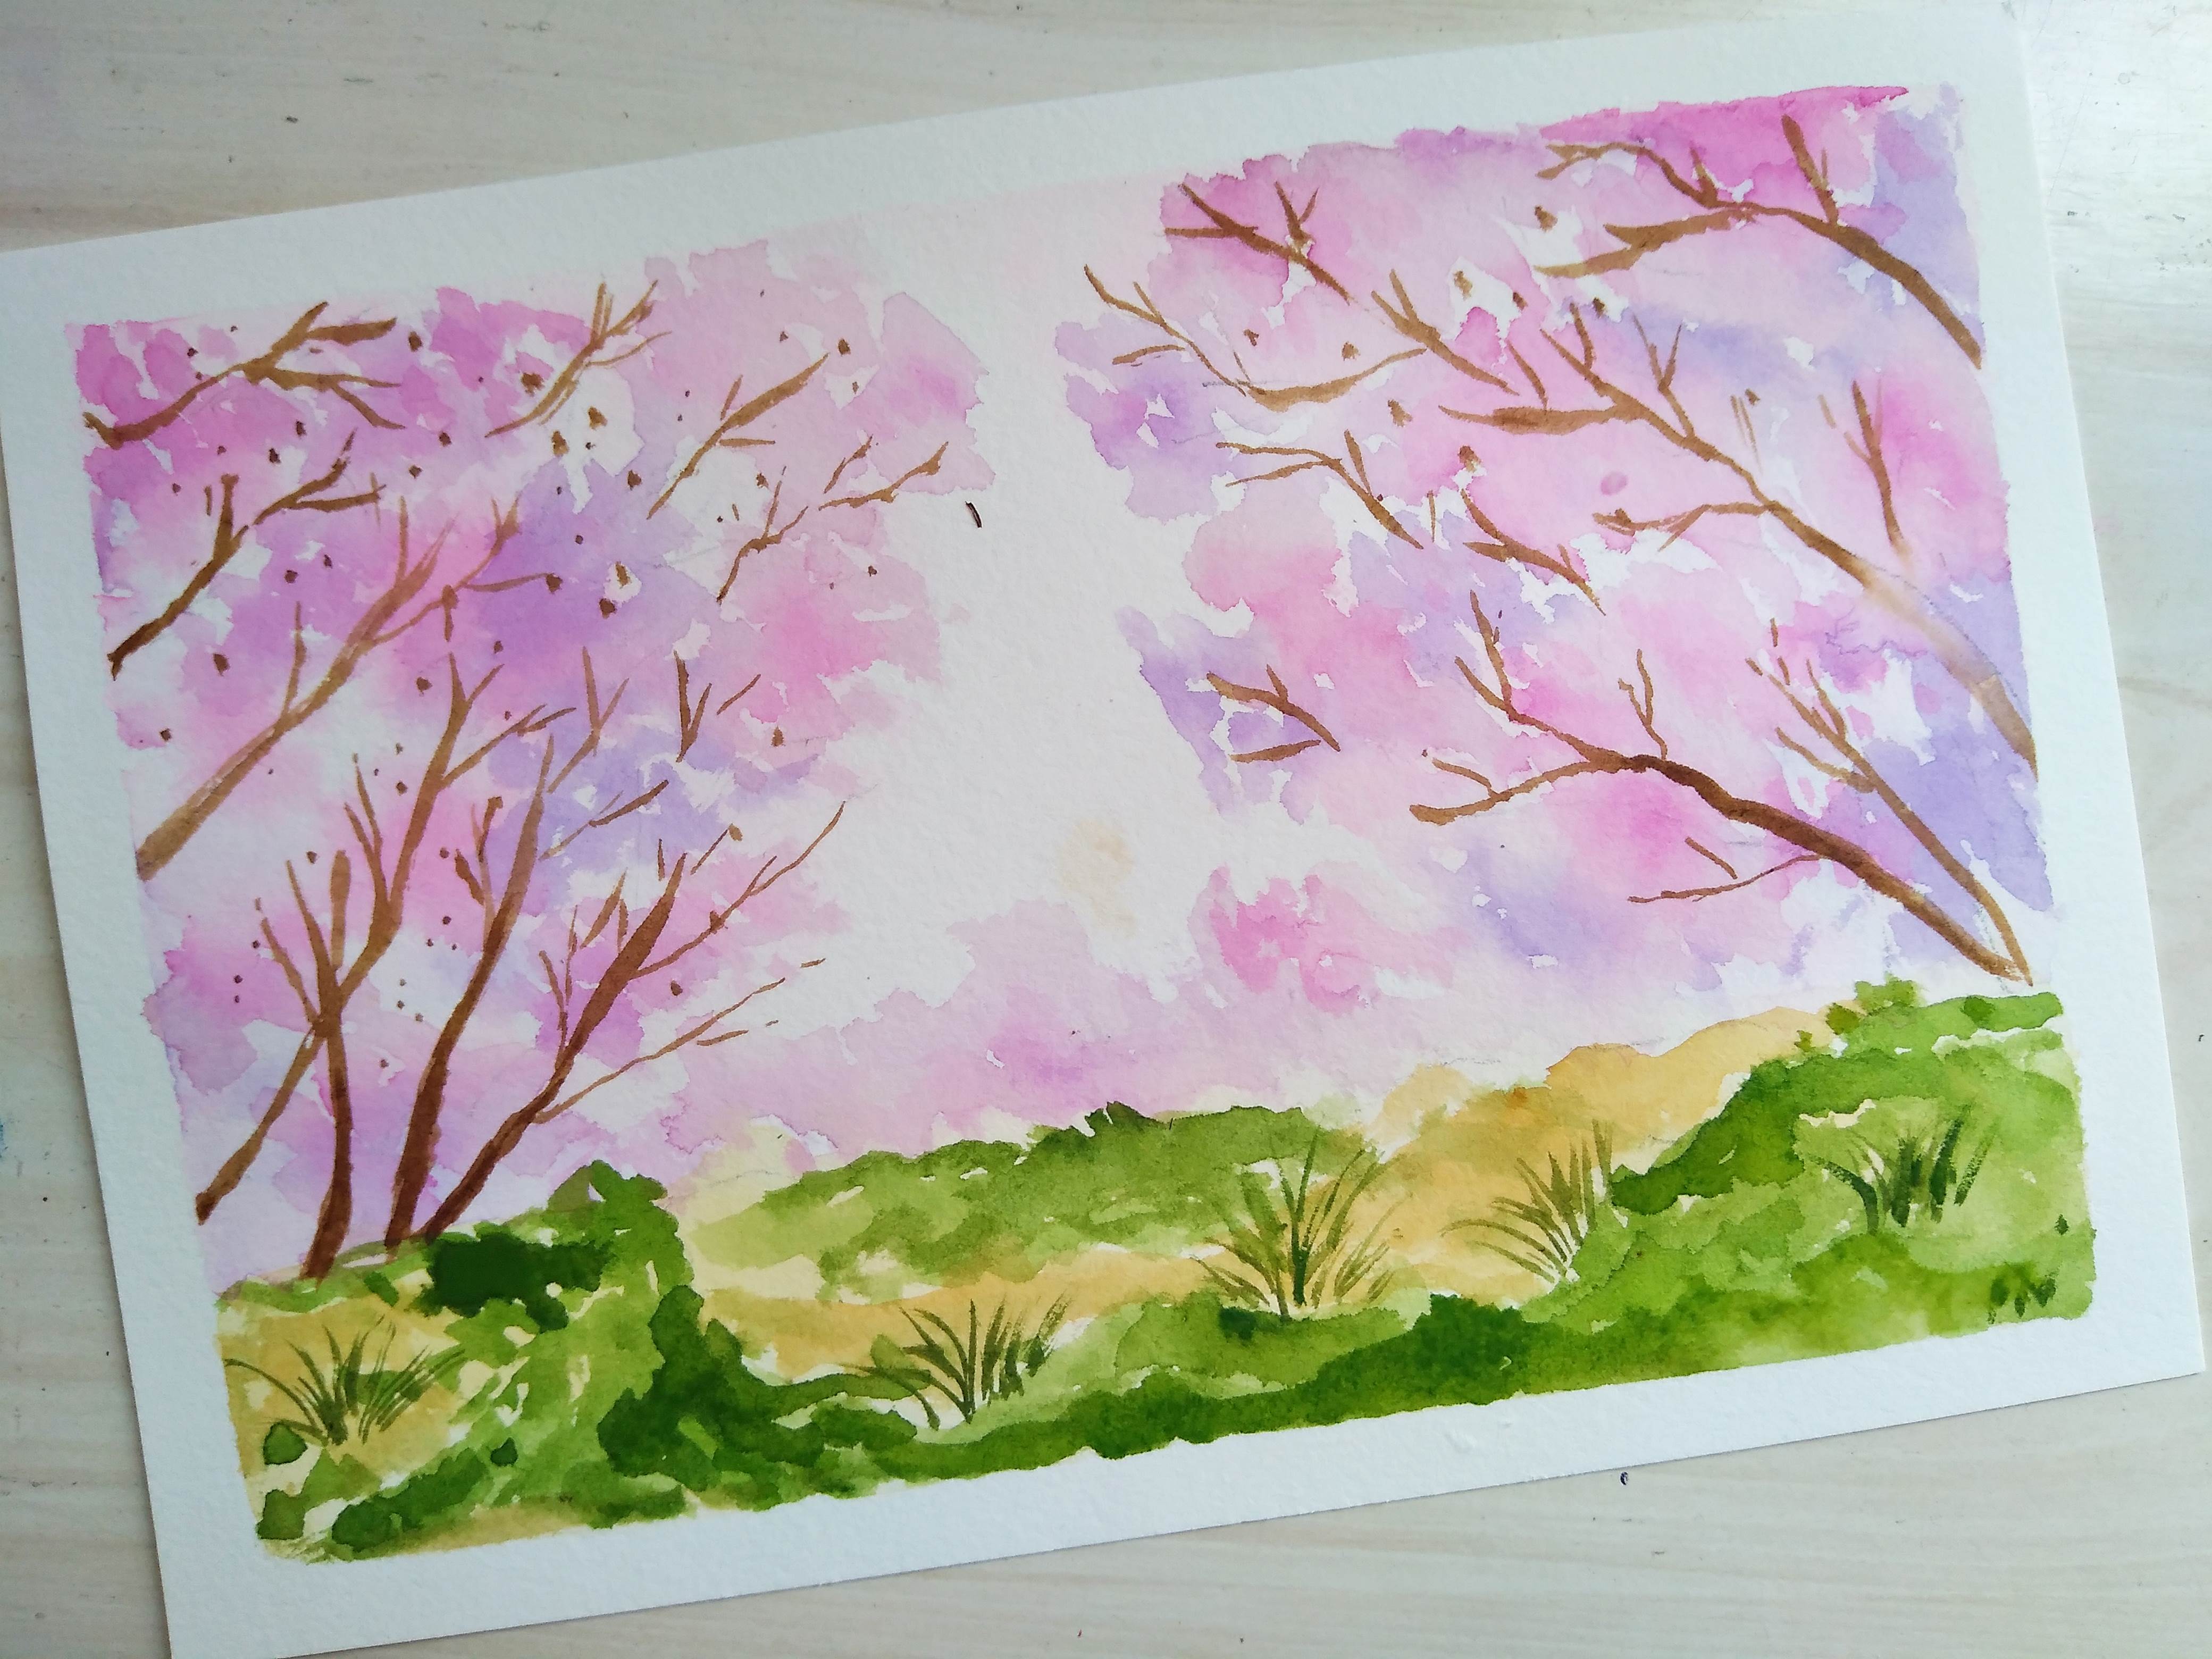 人的简单画法樱花树图片